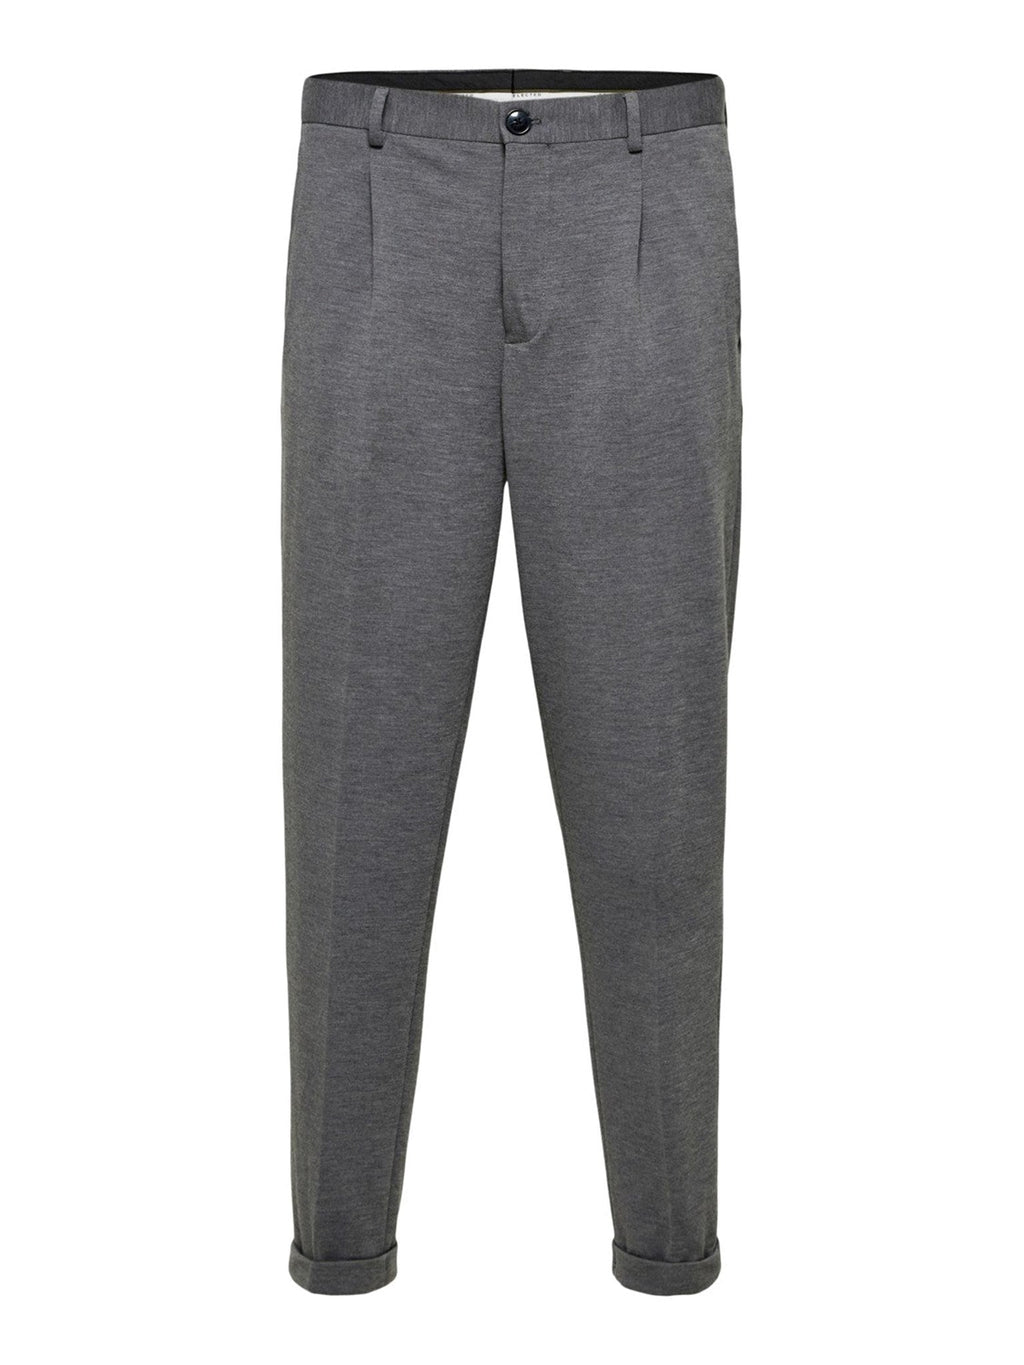 Pantalon flexible - gris